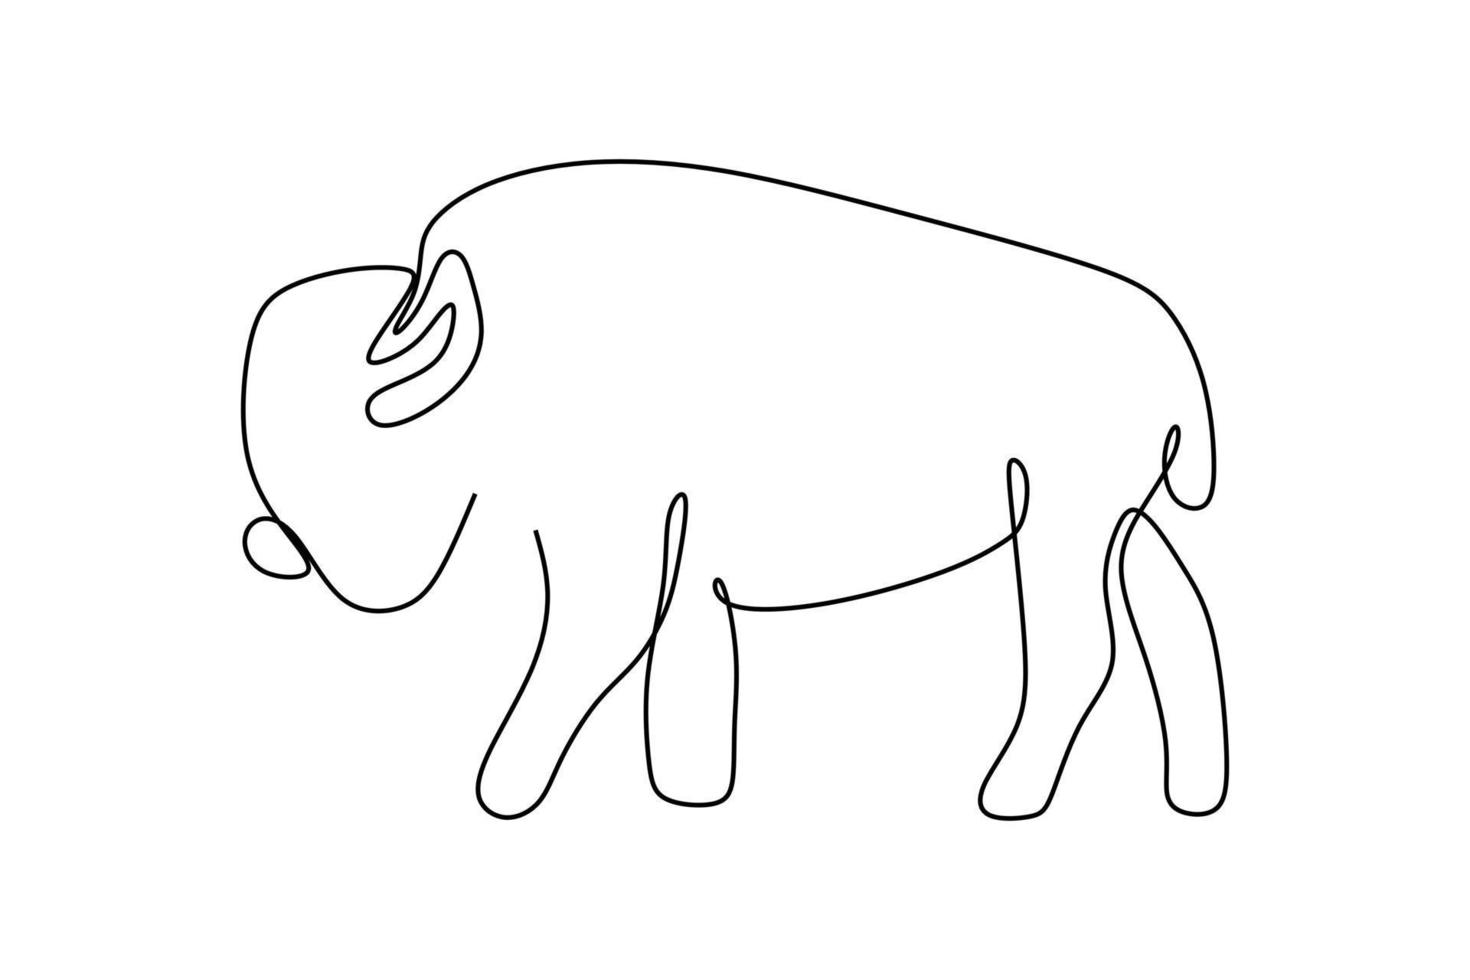 eine Linie Design Silhouette von buffalo.handgezeichneter Minimalismus style.vector illustration vektor